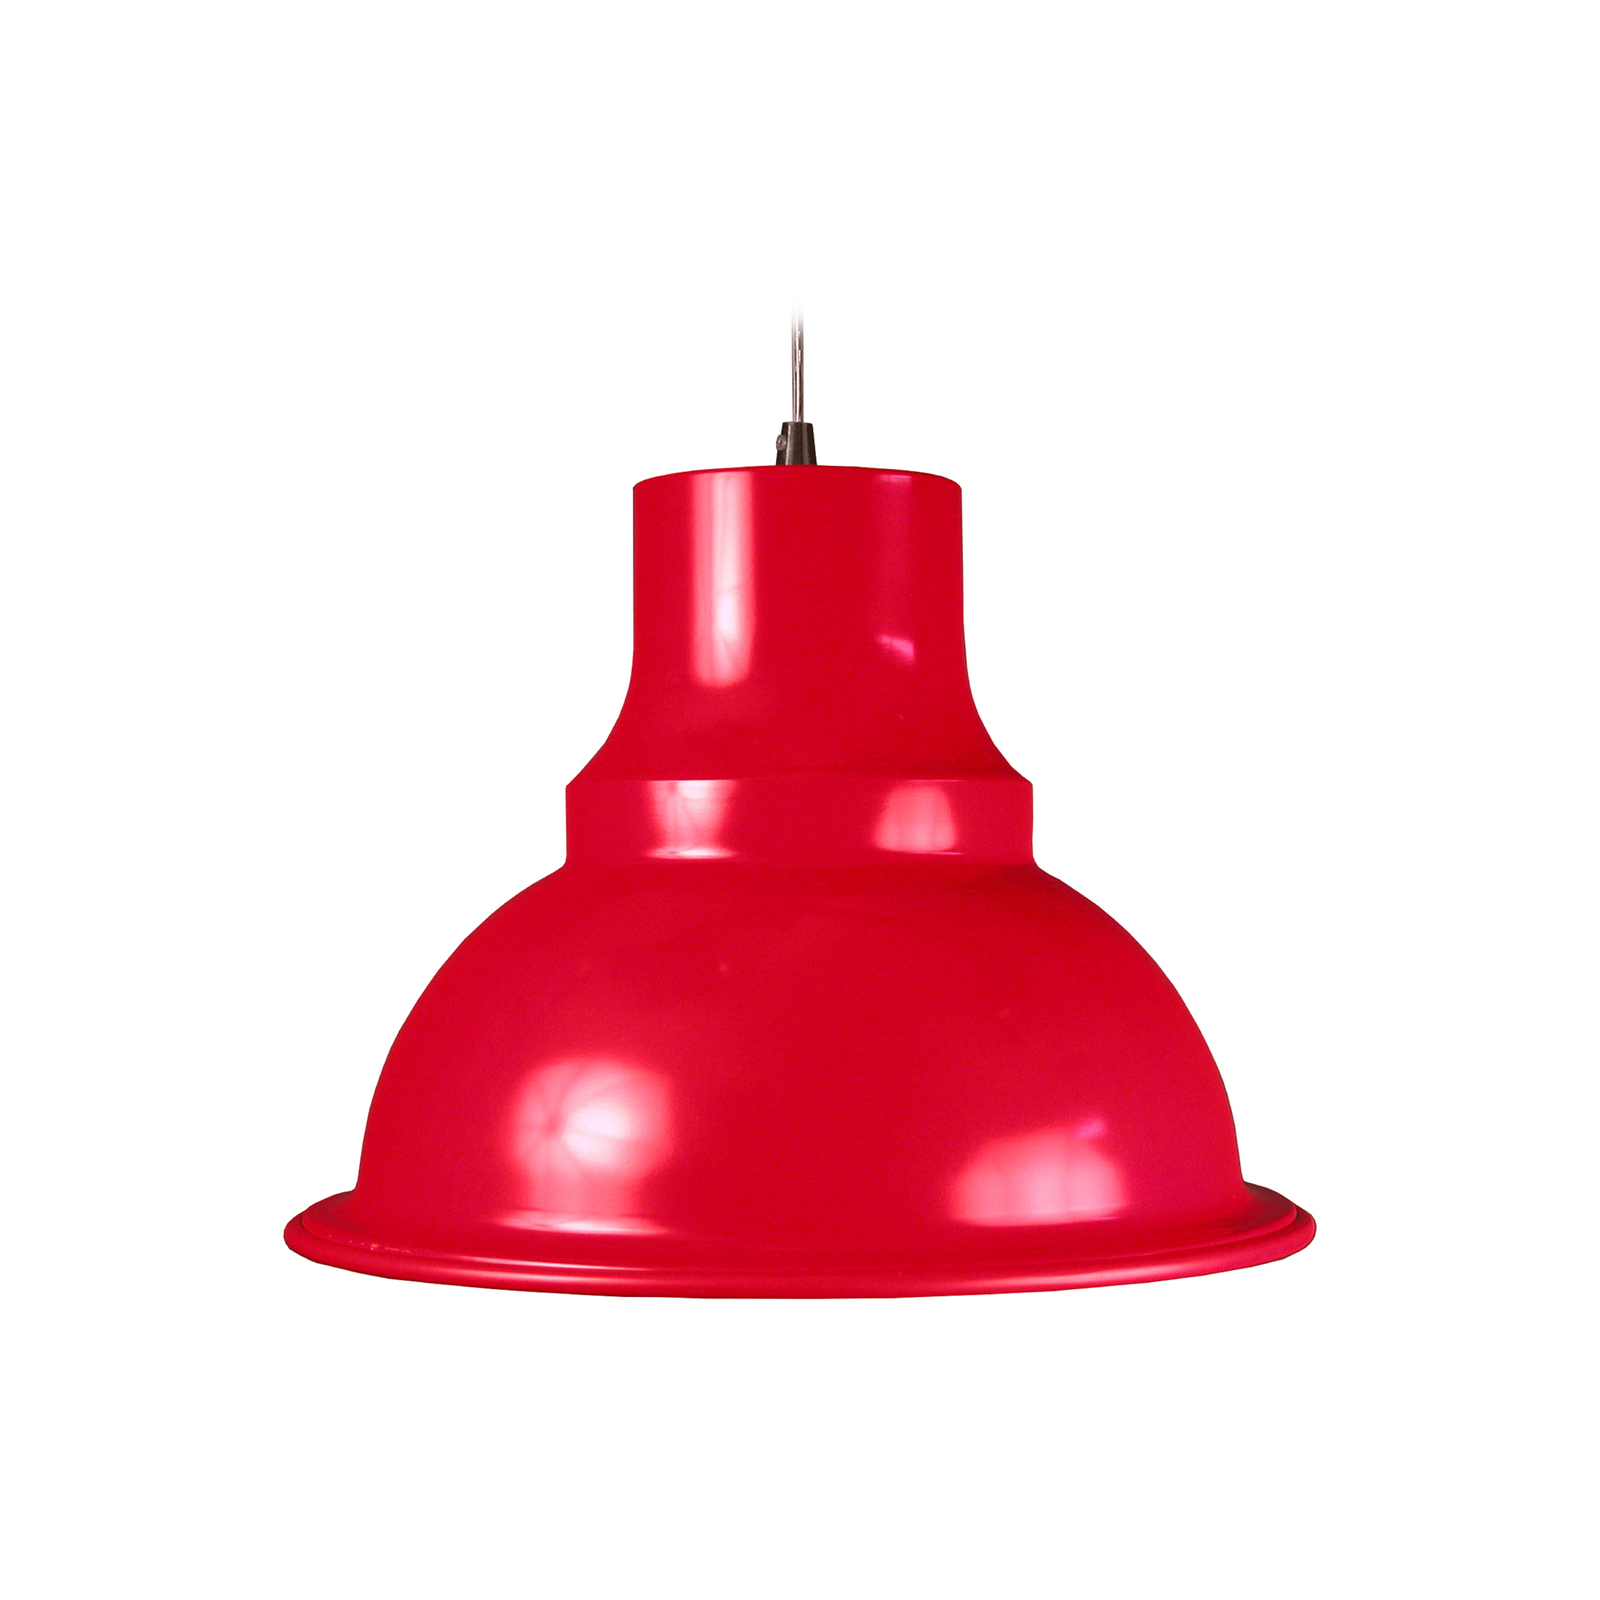 Aluminor Loft závěsné světlo, Ø 39 cm, červená